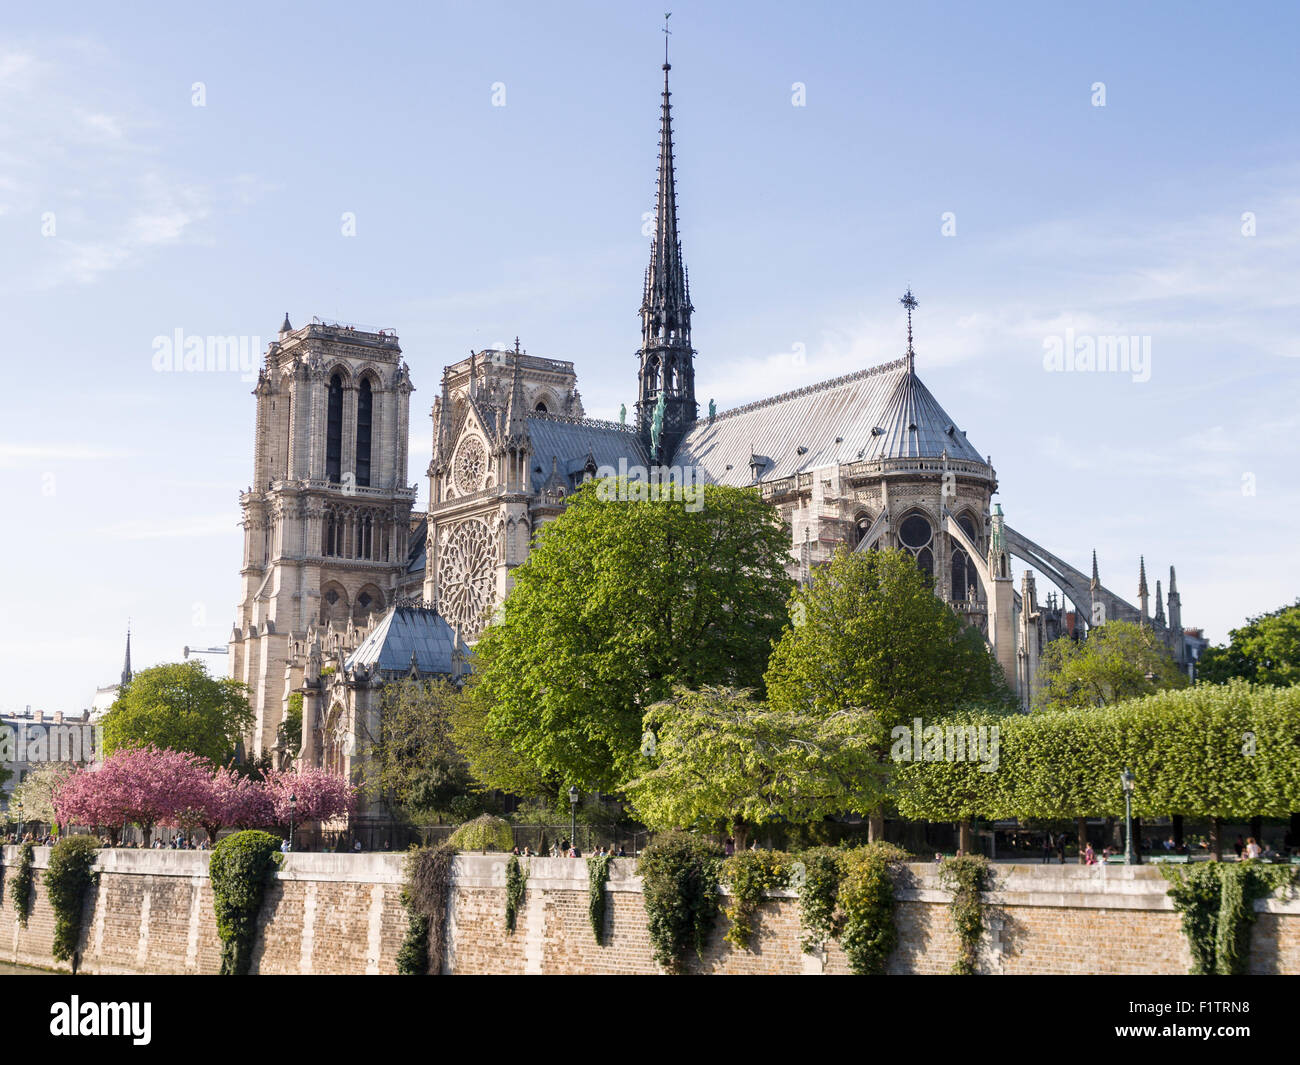 Cathédrale Notre-Dame de l'autre côté de la Seine. Le mur de la rivière canalisée forme une base pour cette vue de la célèbre cathédrale Banque D'Images